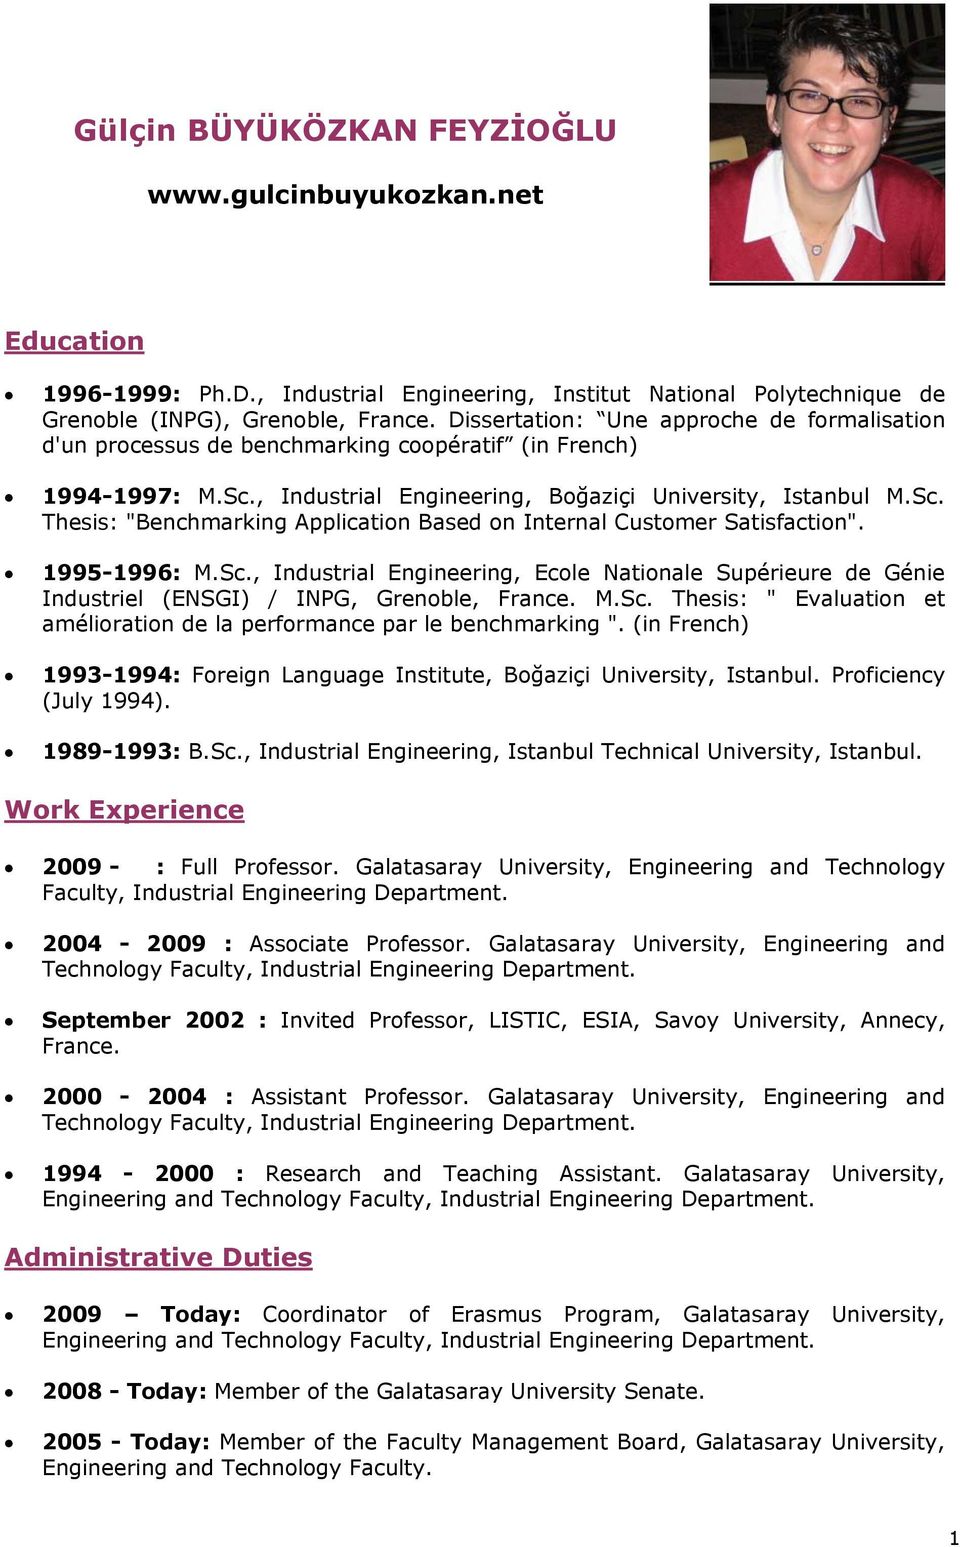 1995-1996: M.Sc., Industrial Engineering, Ecole Nationale Supérieure de Génie Industriel (ENSGI) / INPG, Grenoble, France. M.Sc. Thesis: " Evaluation et amélioration de la performance par le benchmarking ".